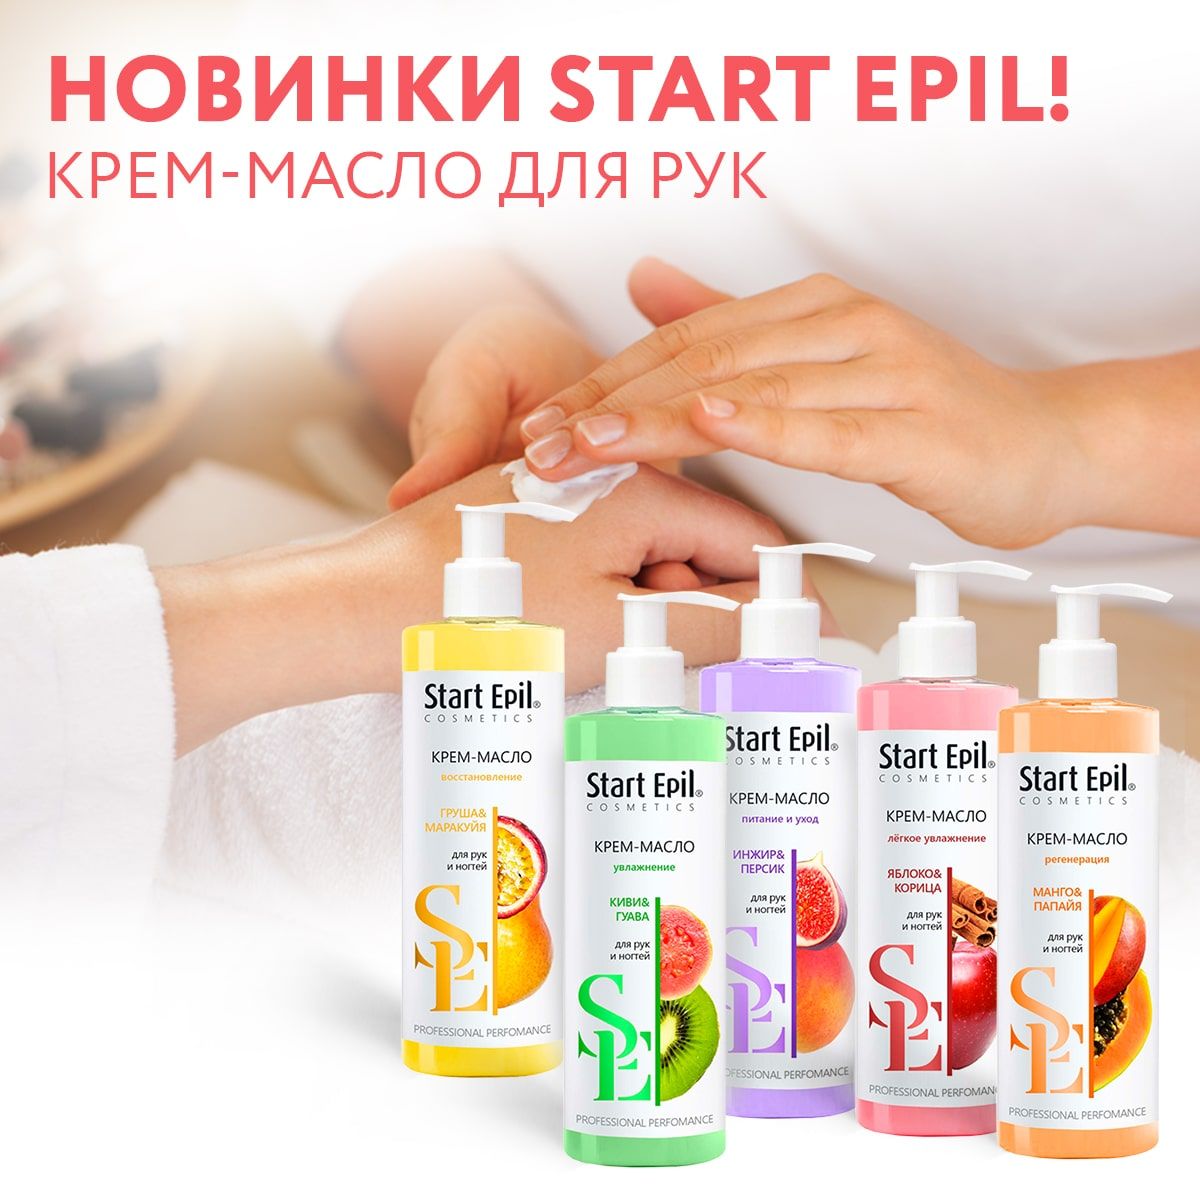 "Start Epil" Крем-масло для рук «Инжир и Персик» 250 мл